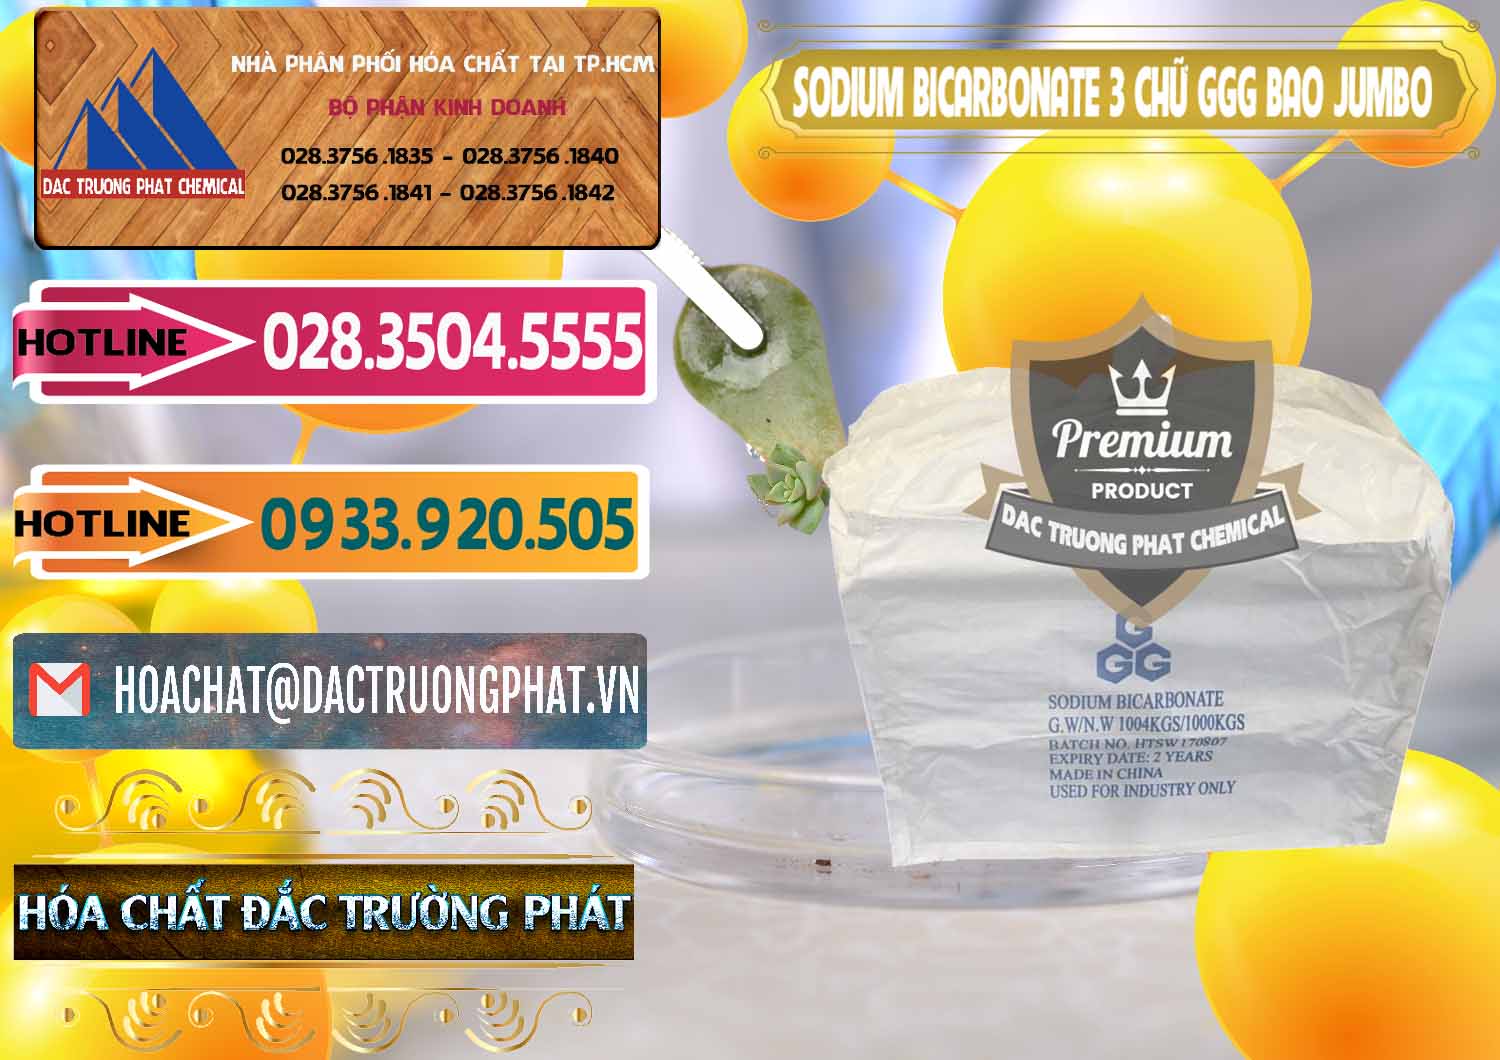 Cty kinh doanh _ bán Sodium Bicarbonate – Bicar NaHCO3 Food Grade 3 Chữ GGG Bao Jumbo ( Bành ) Trung Quốc China - 0260 - Phân phối & cung cấp hóa chất tại TP.HCM - dactruongphat.vn